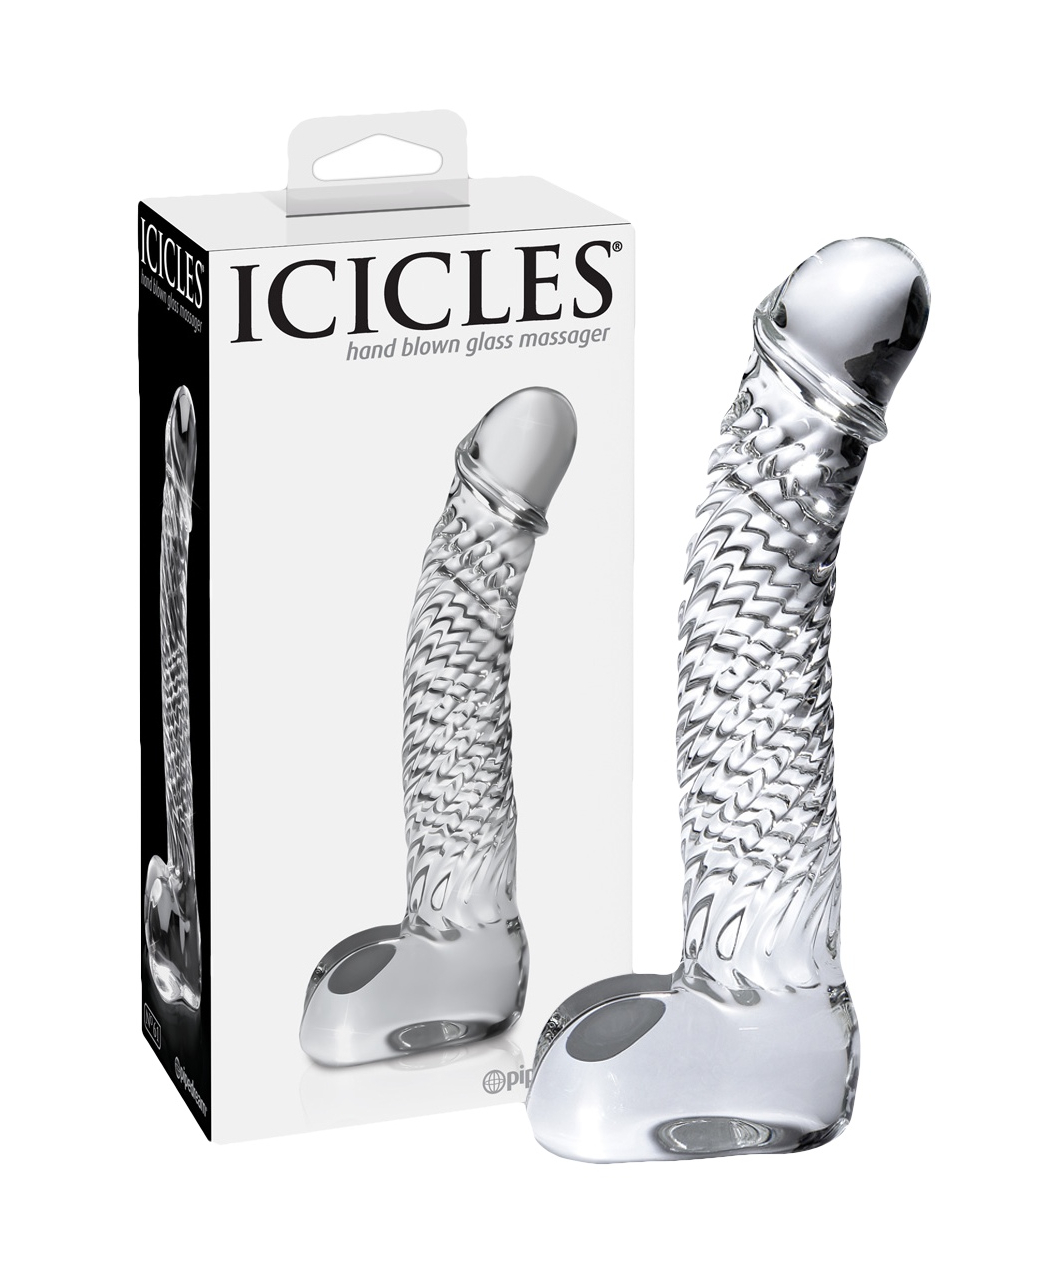 Icicles No. 61 glass dildo